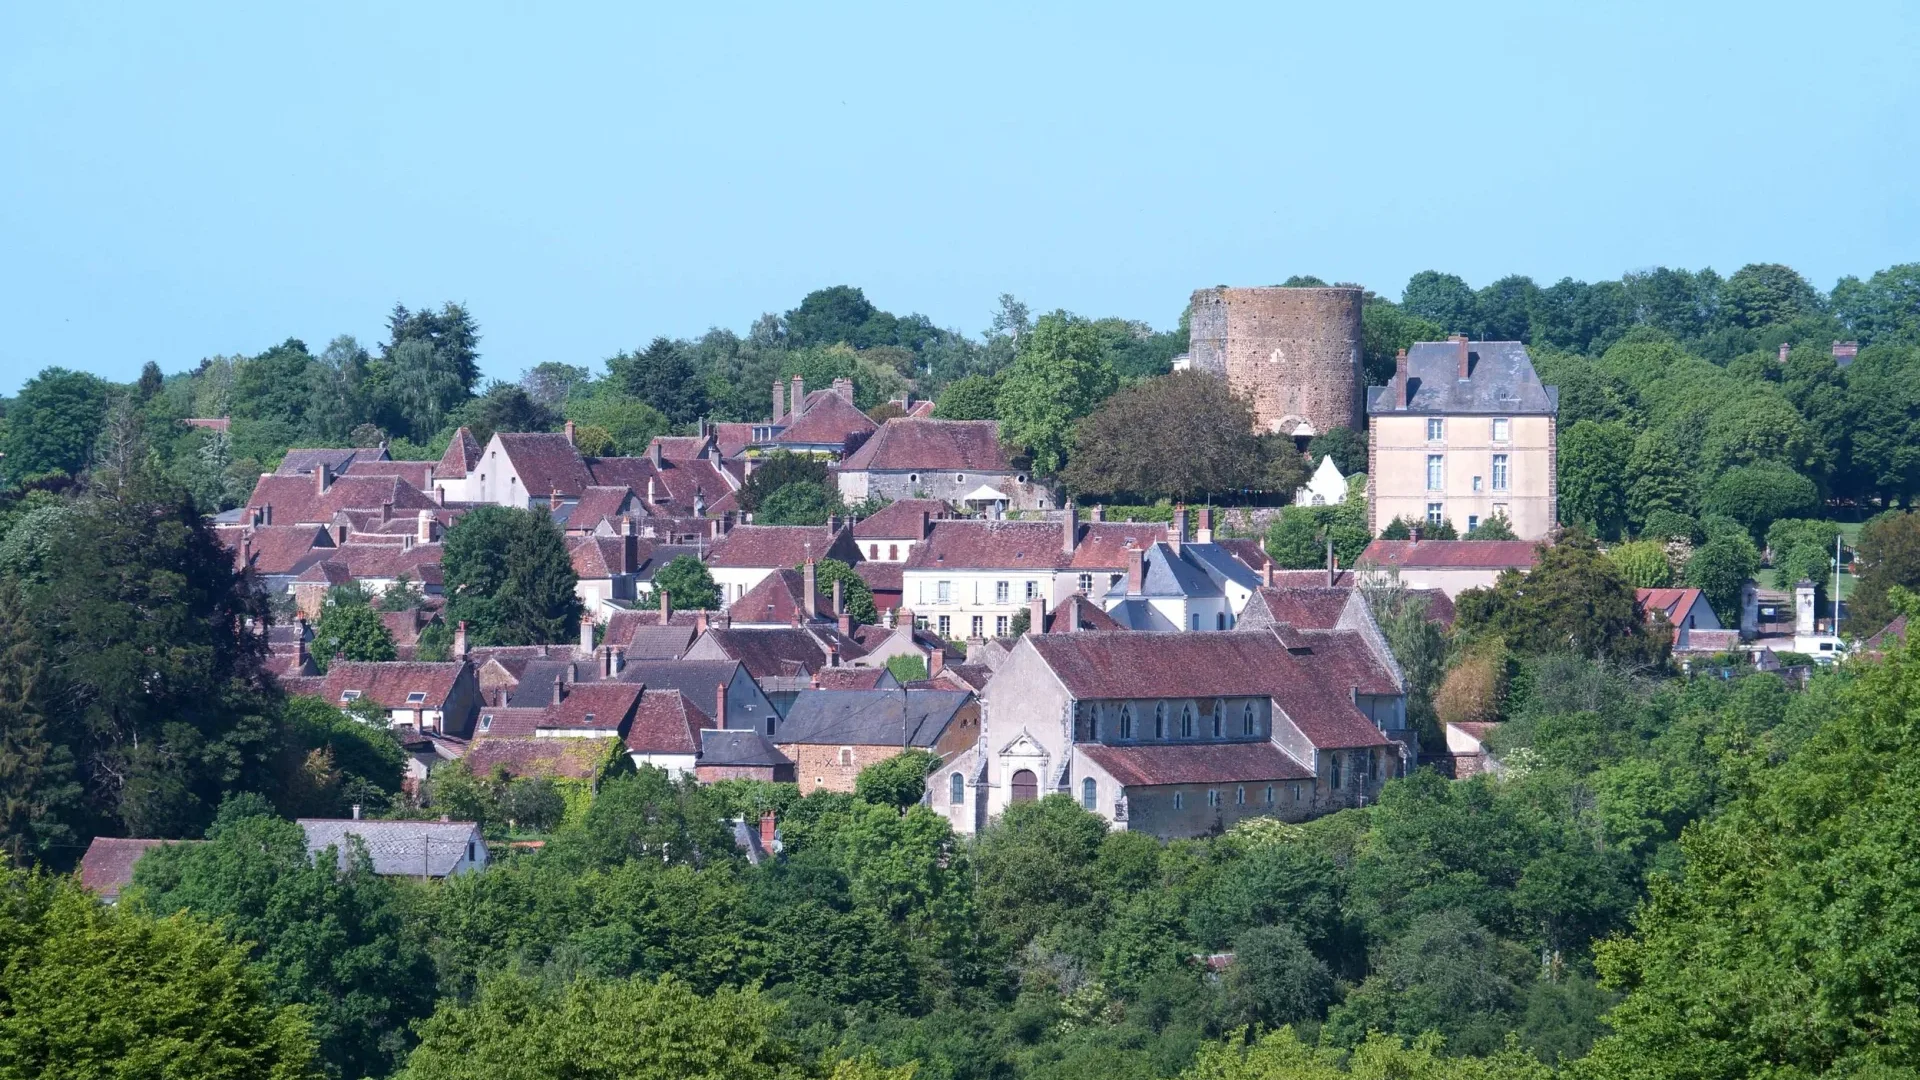 The village of Saint-Sauveur-en-Puisaye